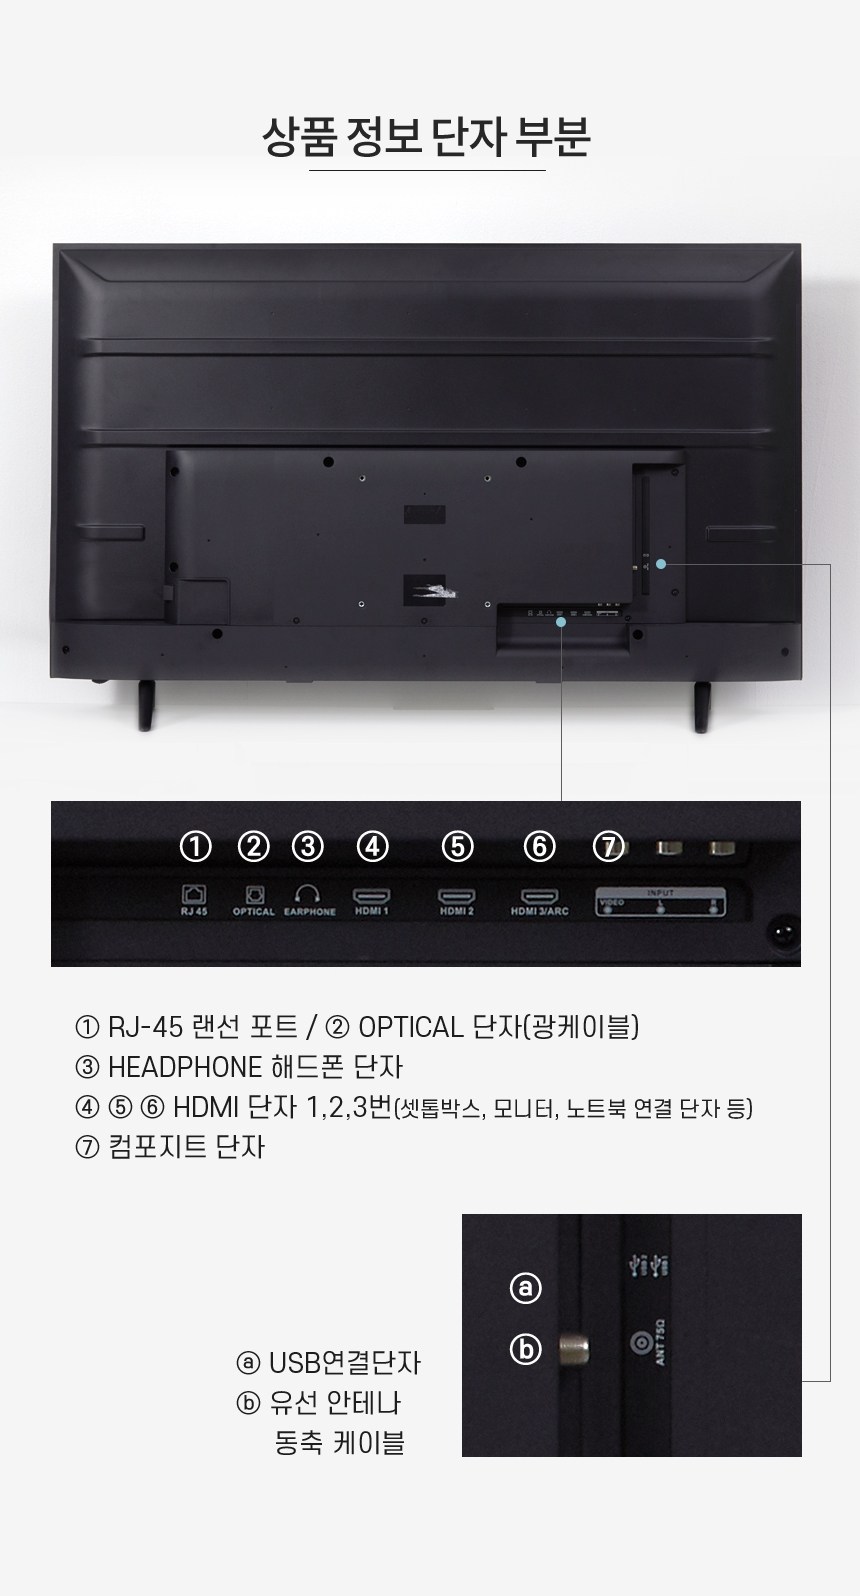 와이드뷰 구글 스마트TV 안드로이드 4K UHD109cm(43인치) · GTWV43UHD-E1 · 스탠드형 · 자가설치